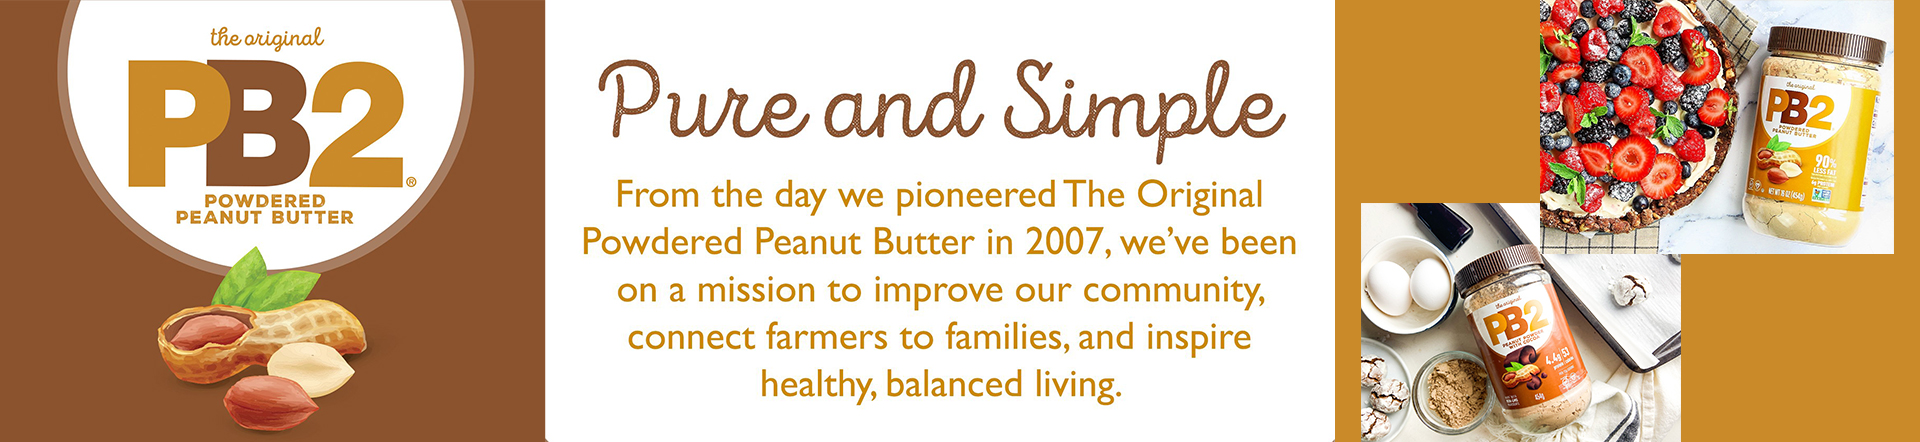 PB2 Foods Peanut Butter Bell Plantation